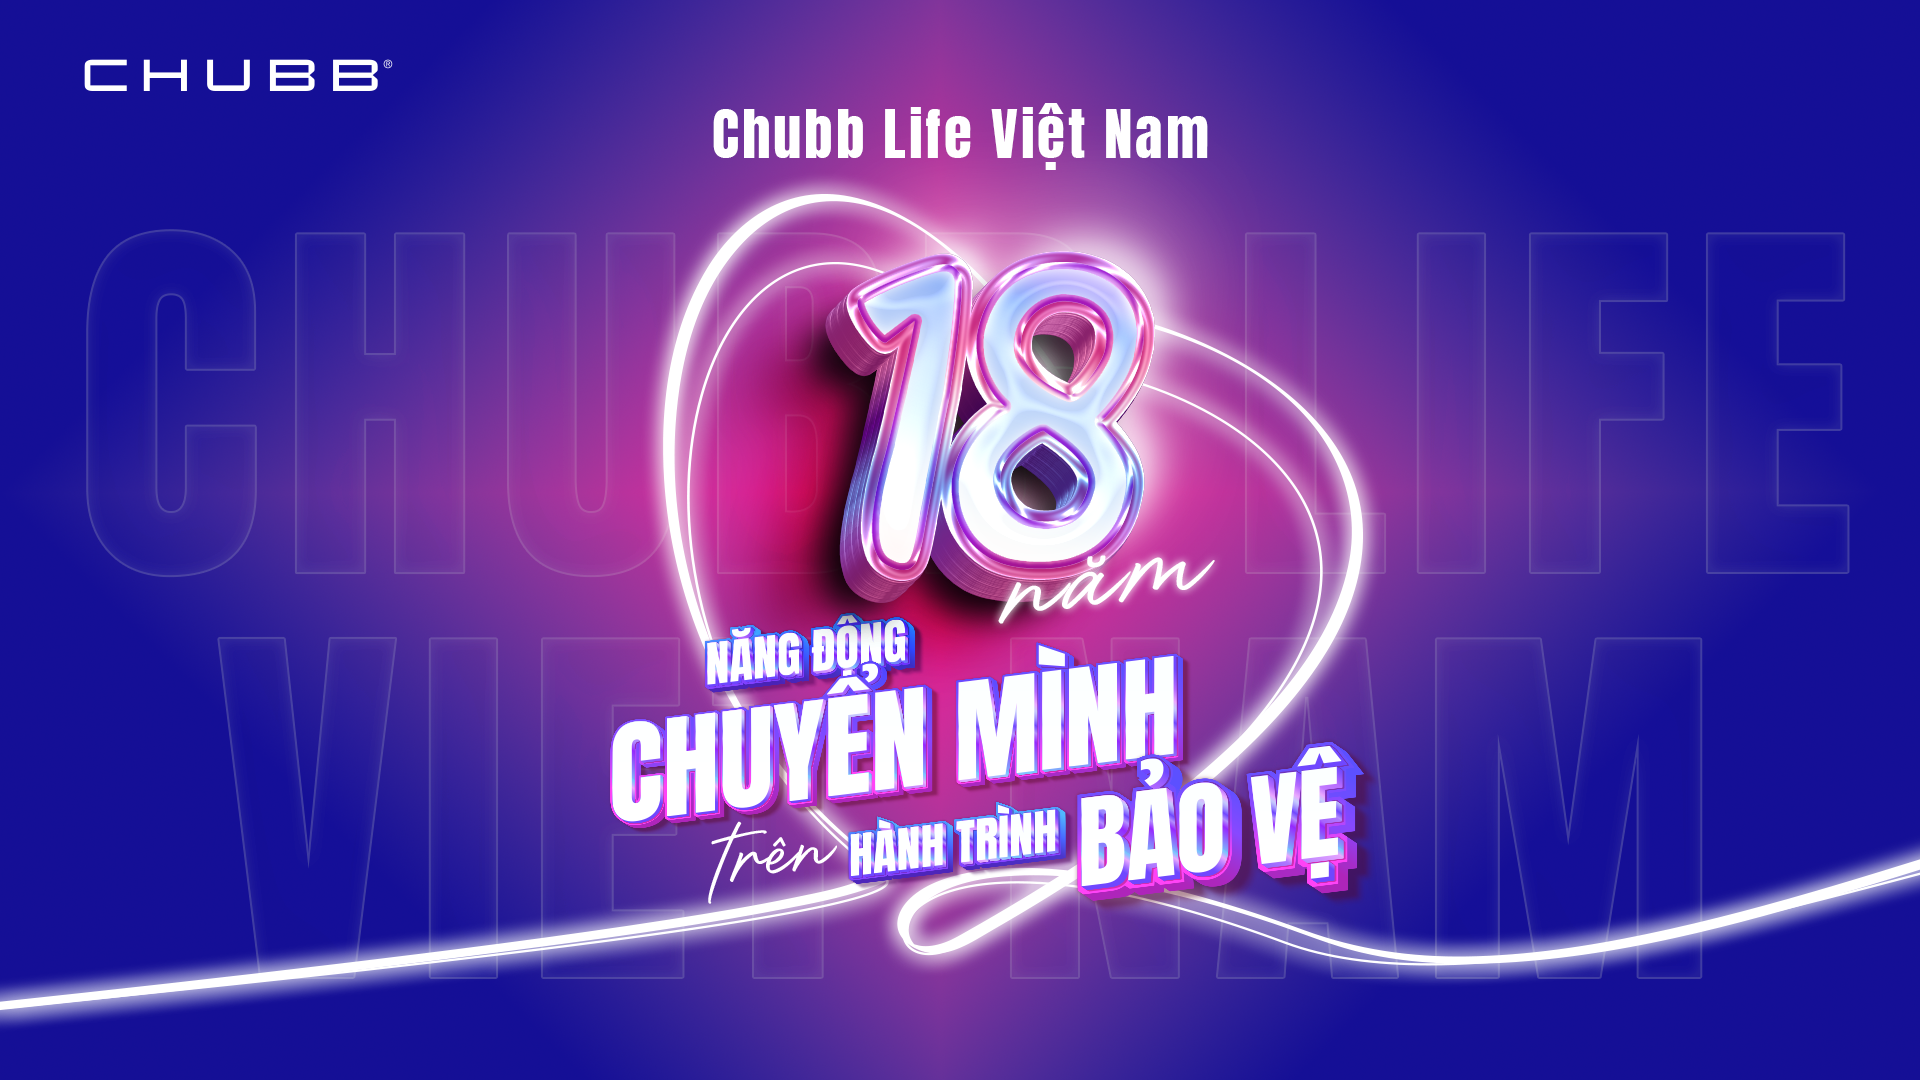 TGĐ Chubb Life VN: “18 năm bảo vệ người Việt vì một chữ “tâm” - Ảnh 3.